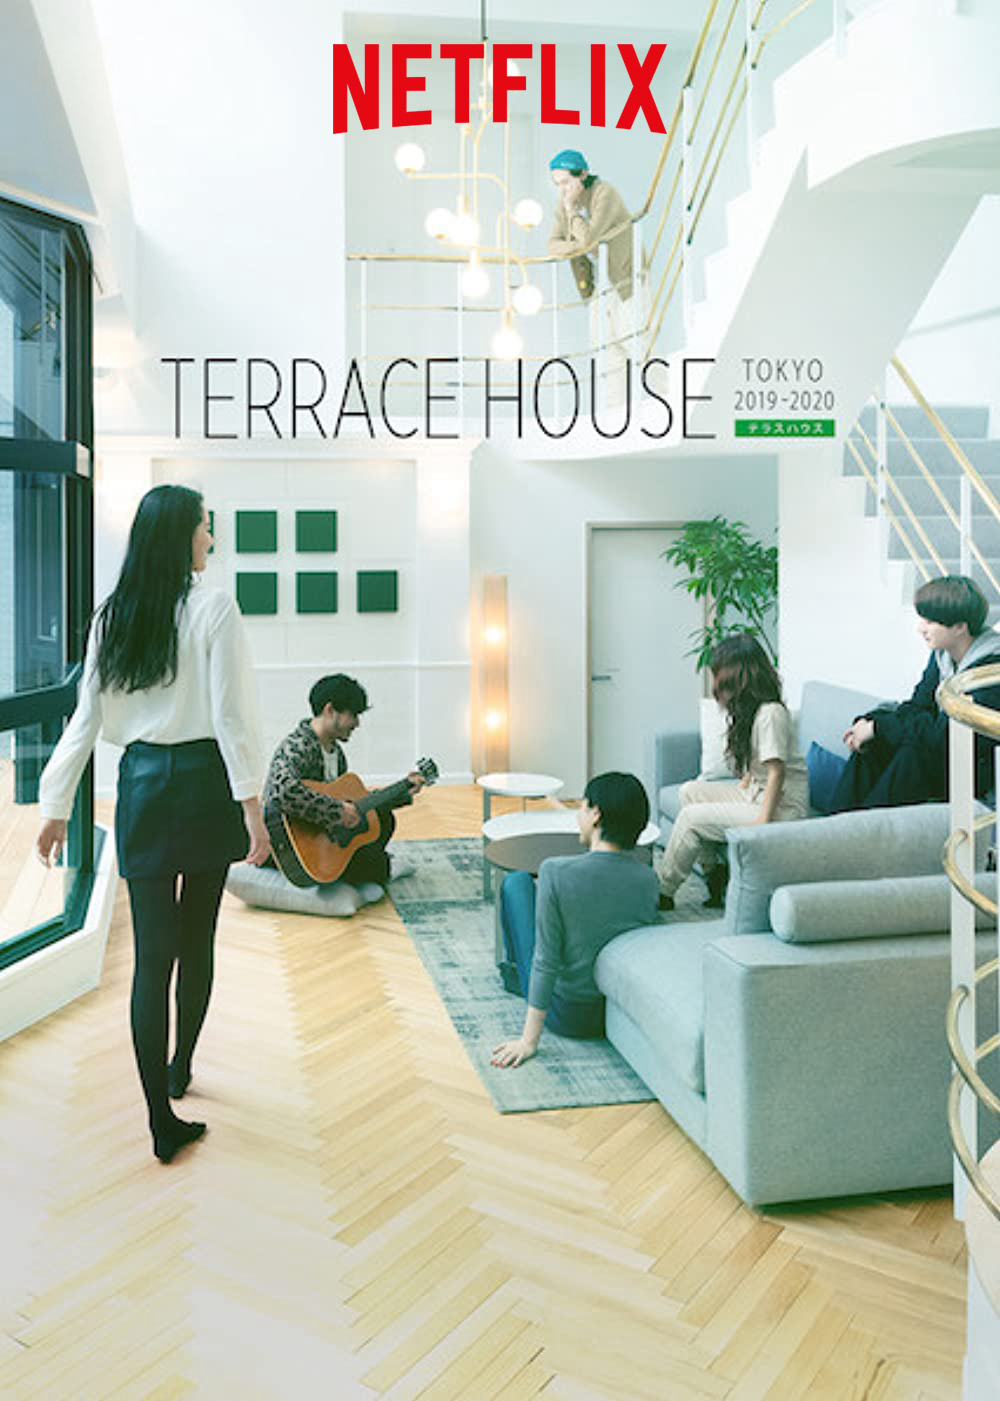 Terrace House: Tokyo 2019-2020 (Phần 2) - Terrace House: Tokyo 2019-2020 (Season 2)